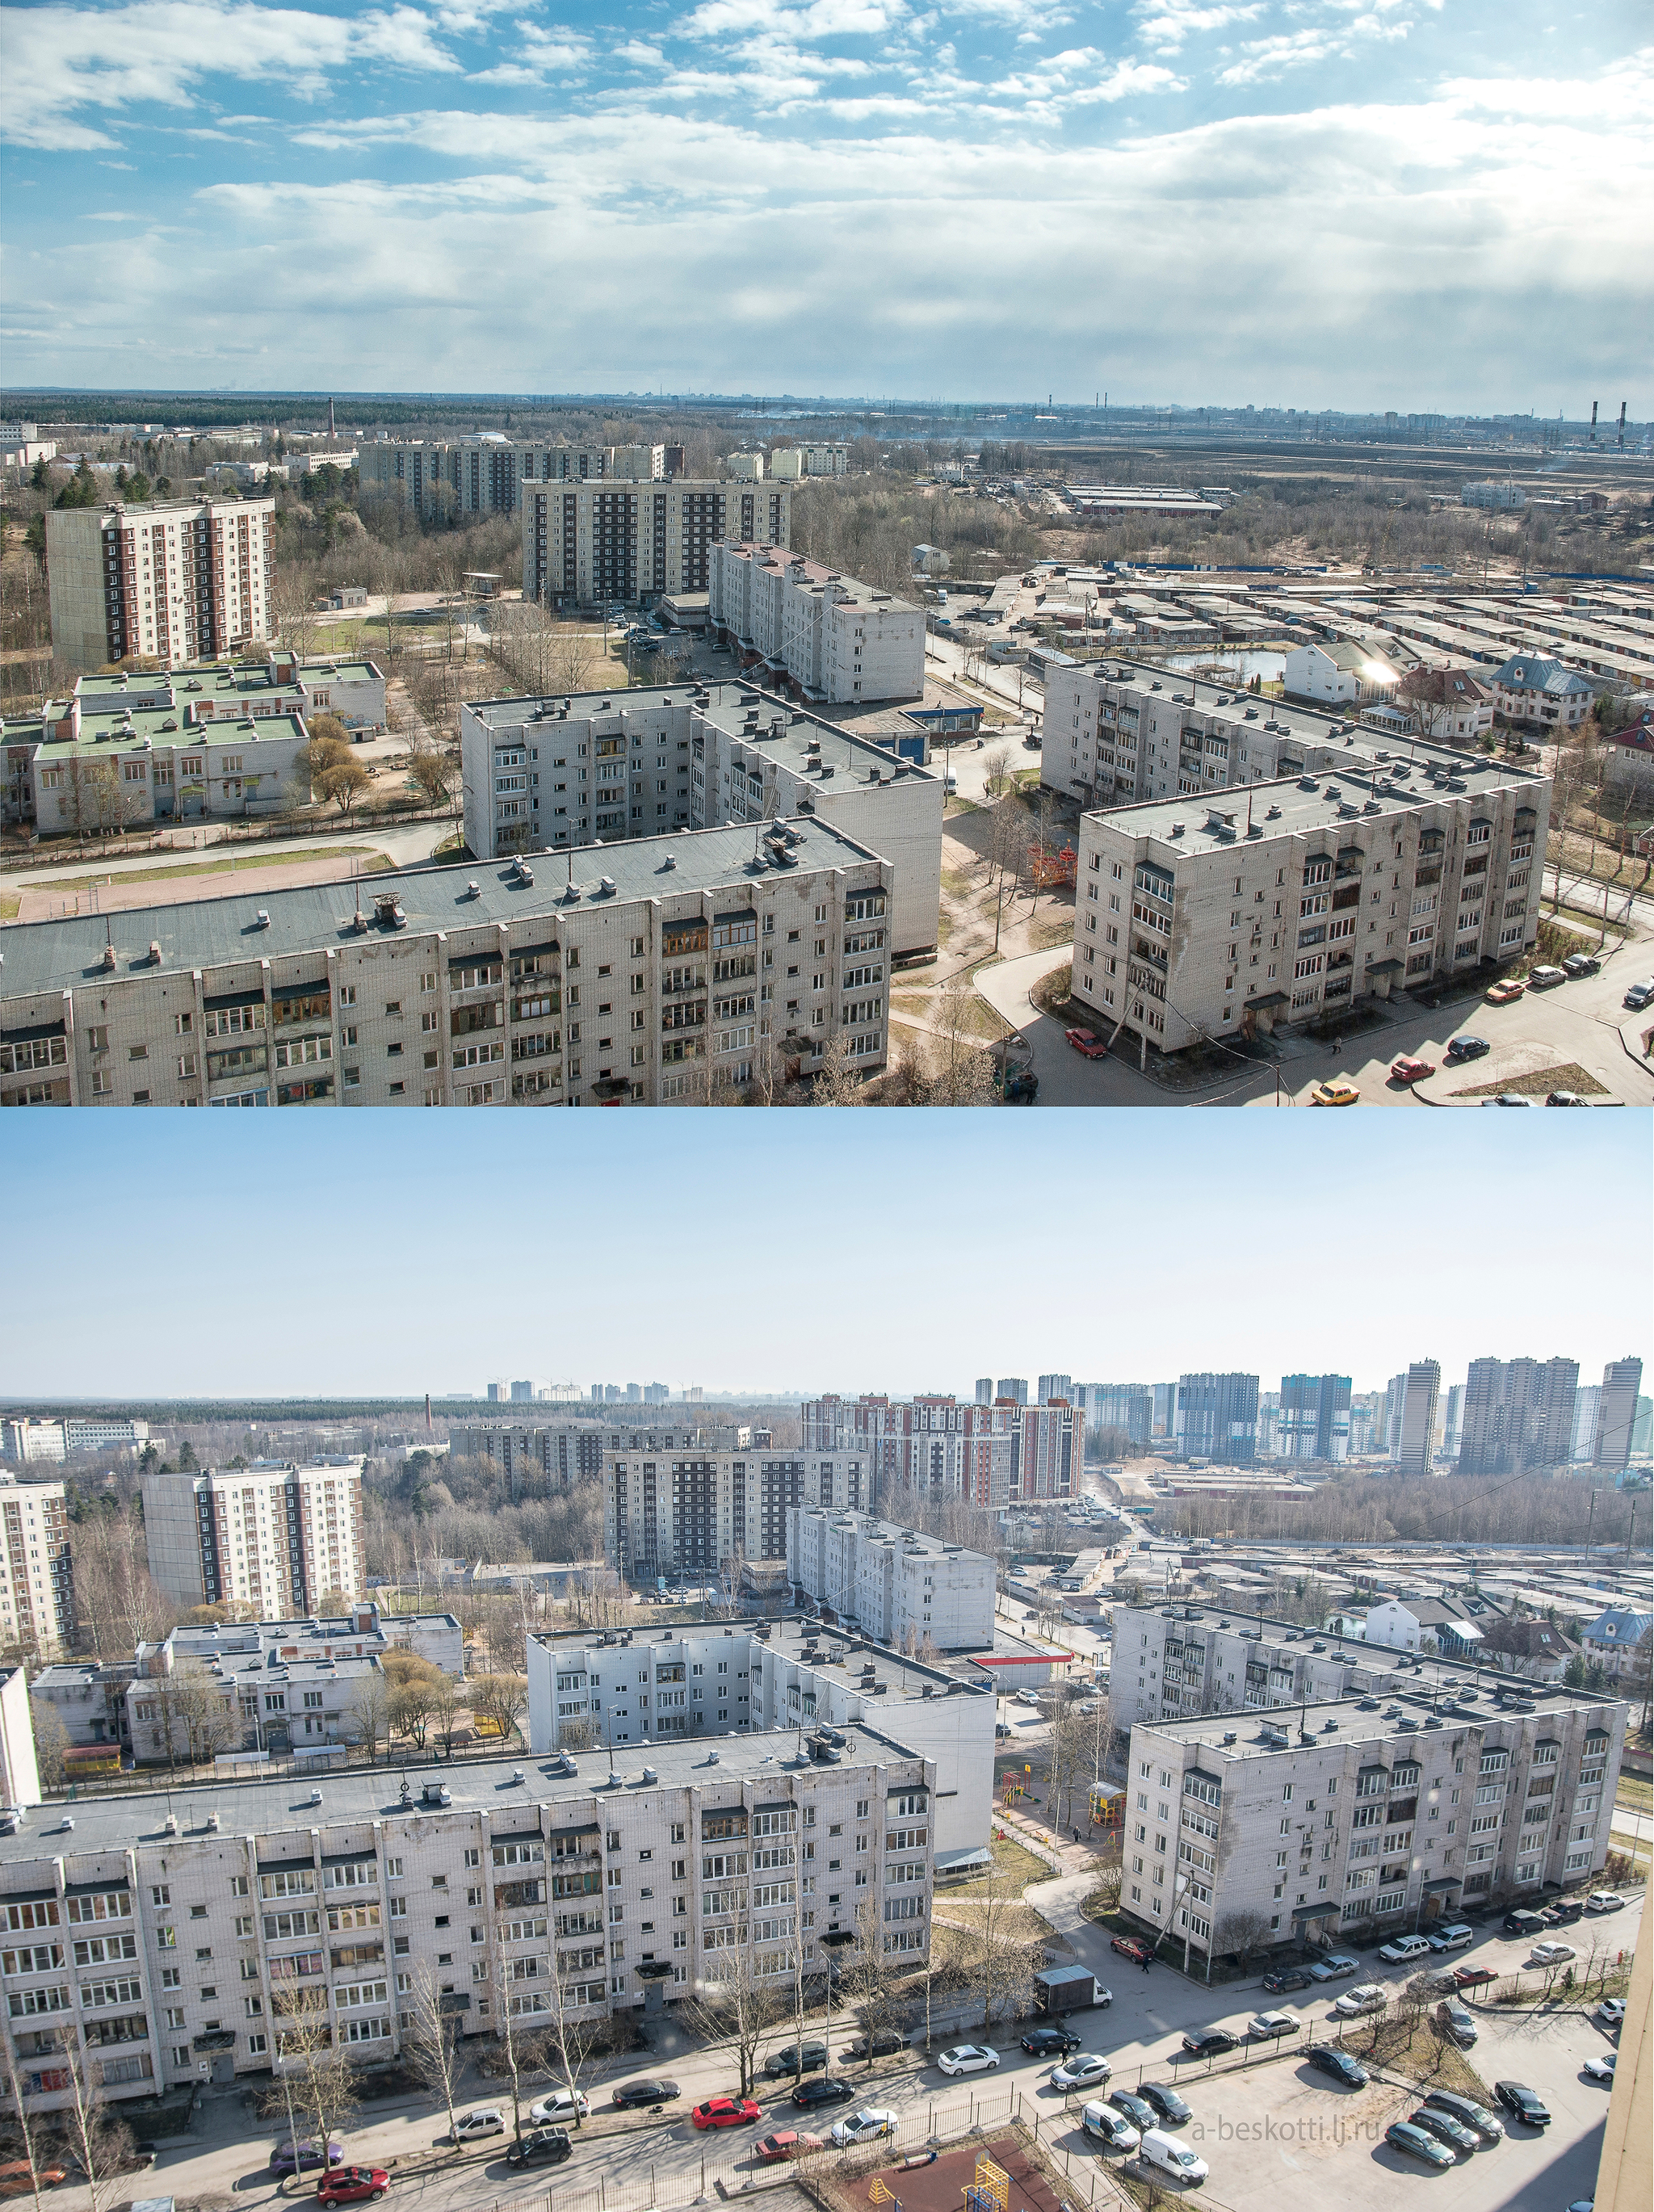 Murino, Devyatkino. - My, It Was-It Was, Murino, Devyatkino, View from above, New building, Leningrad region, Change, Longpost